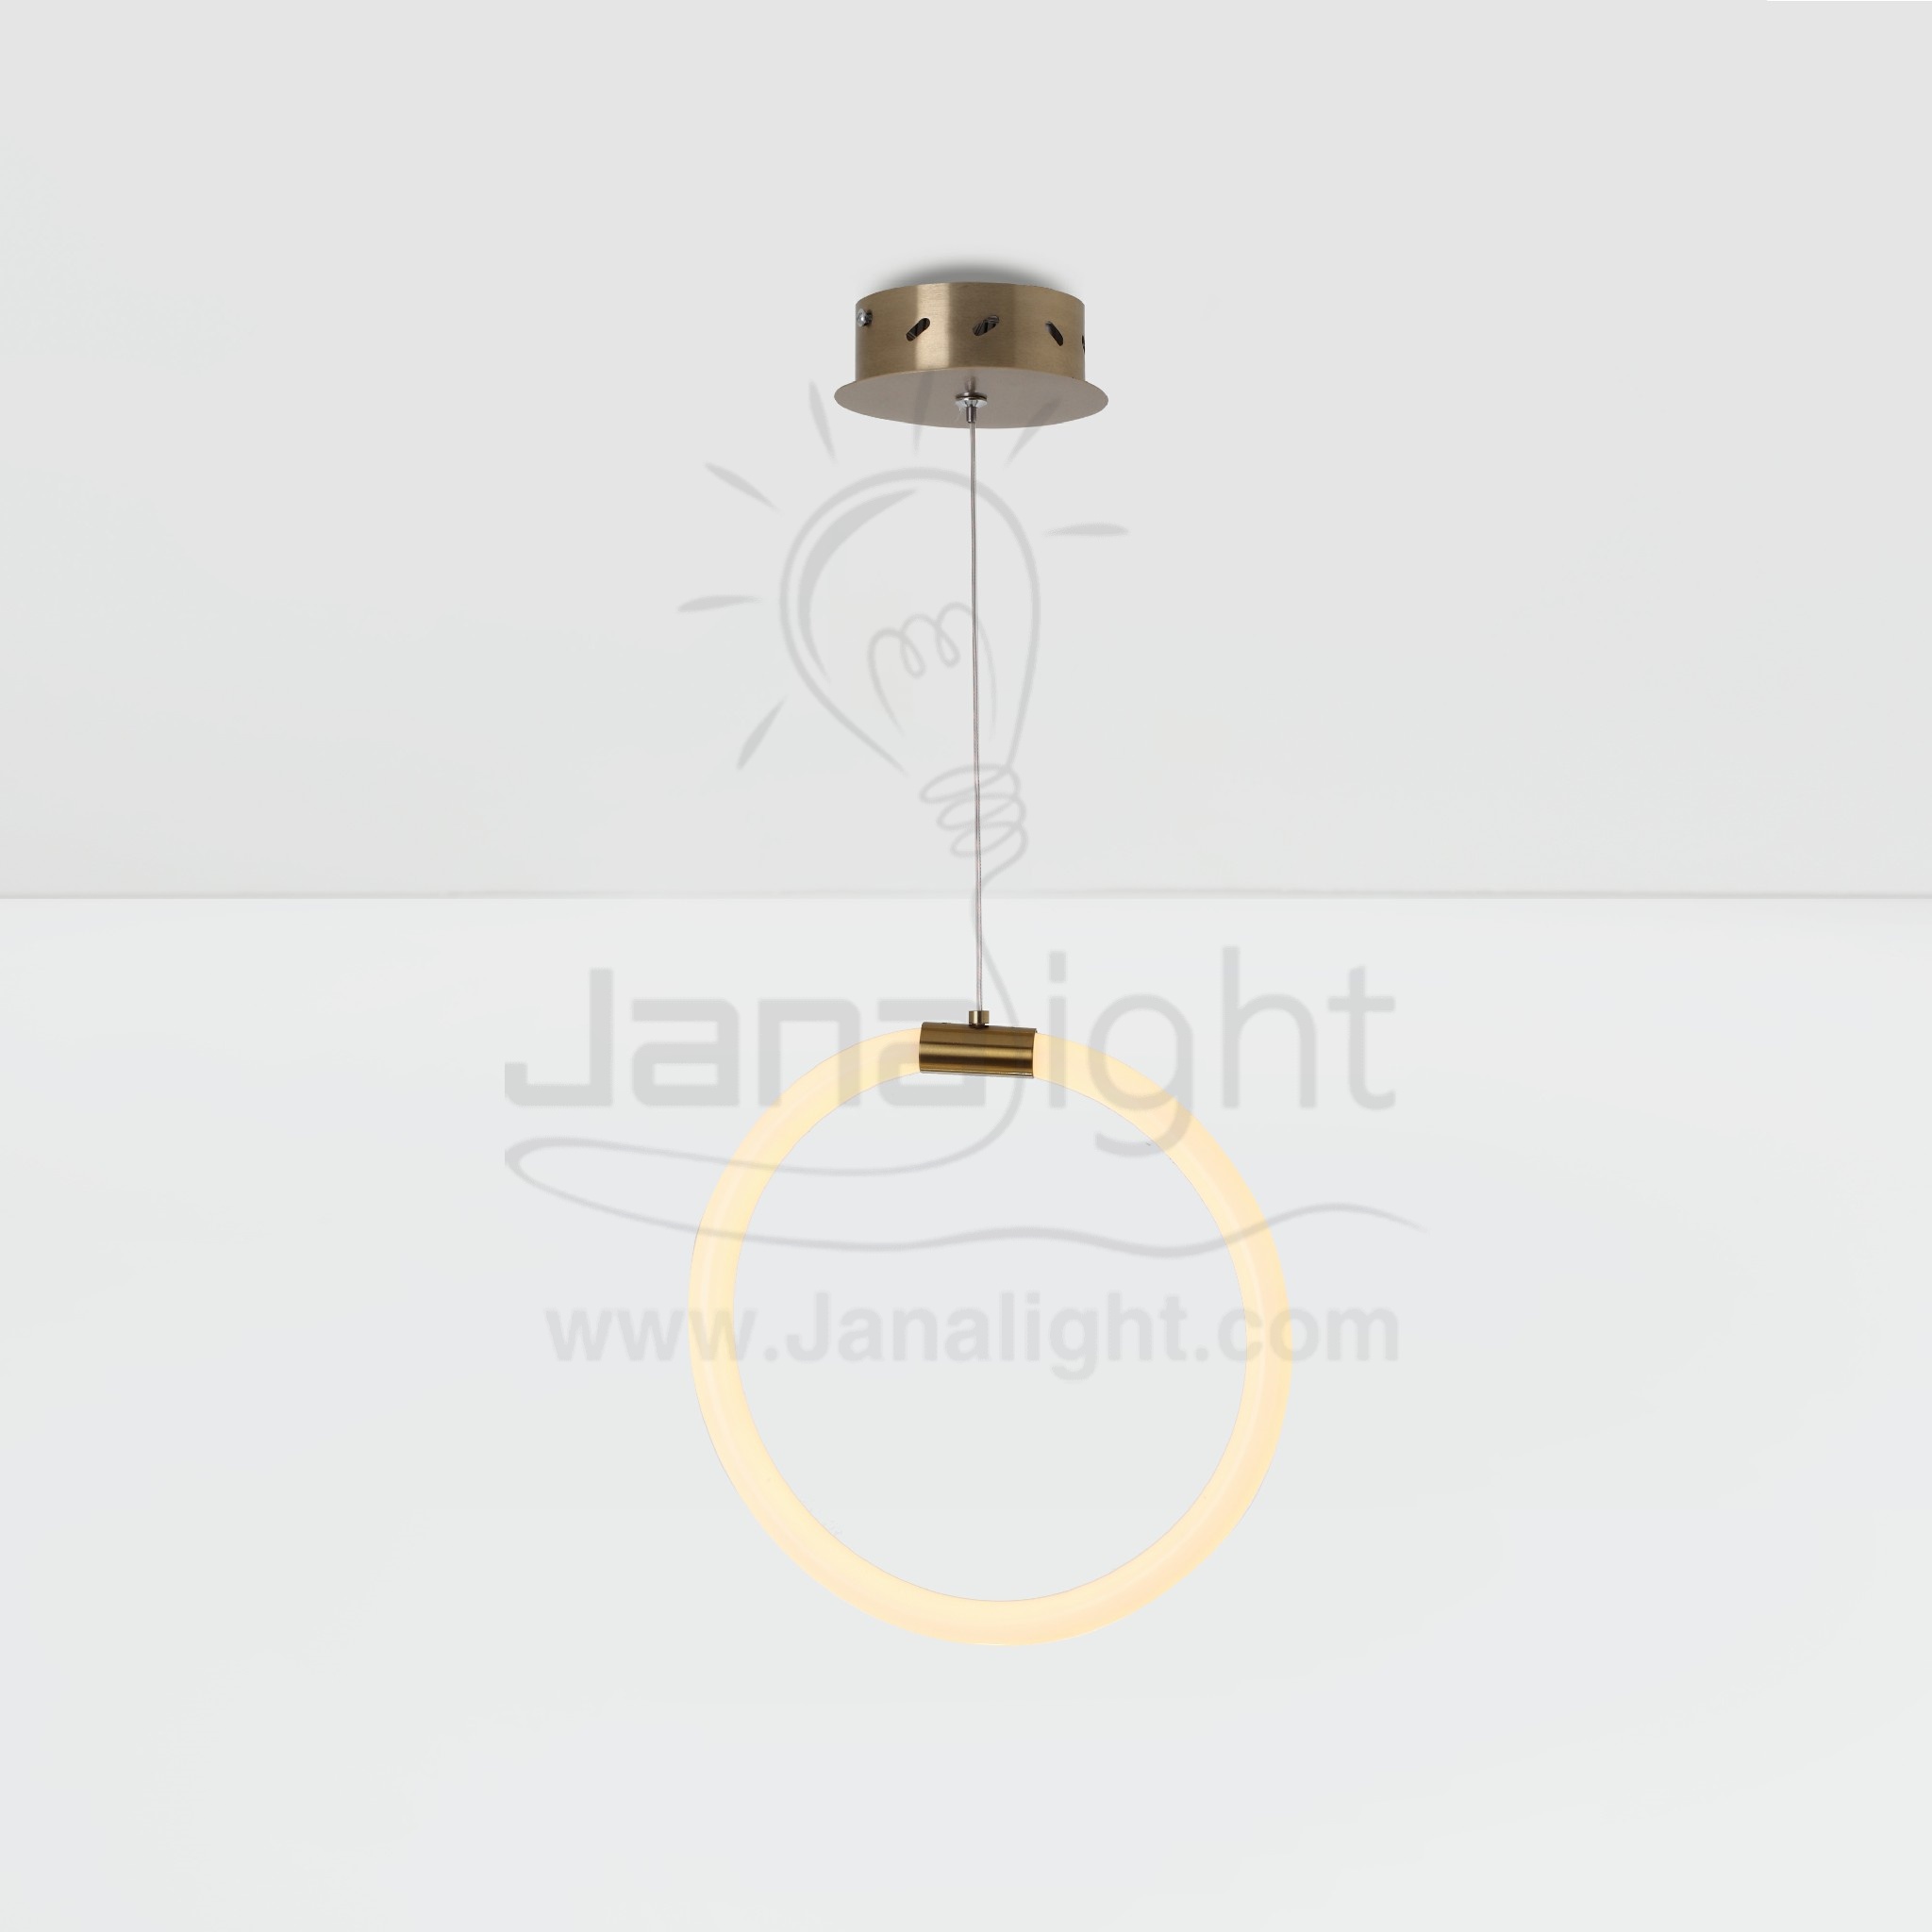 دلاية ليد خرطوم مرن شكل دائري Modern luminaire hanglamp ceiling pendant led one minimalist ring